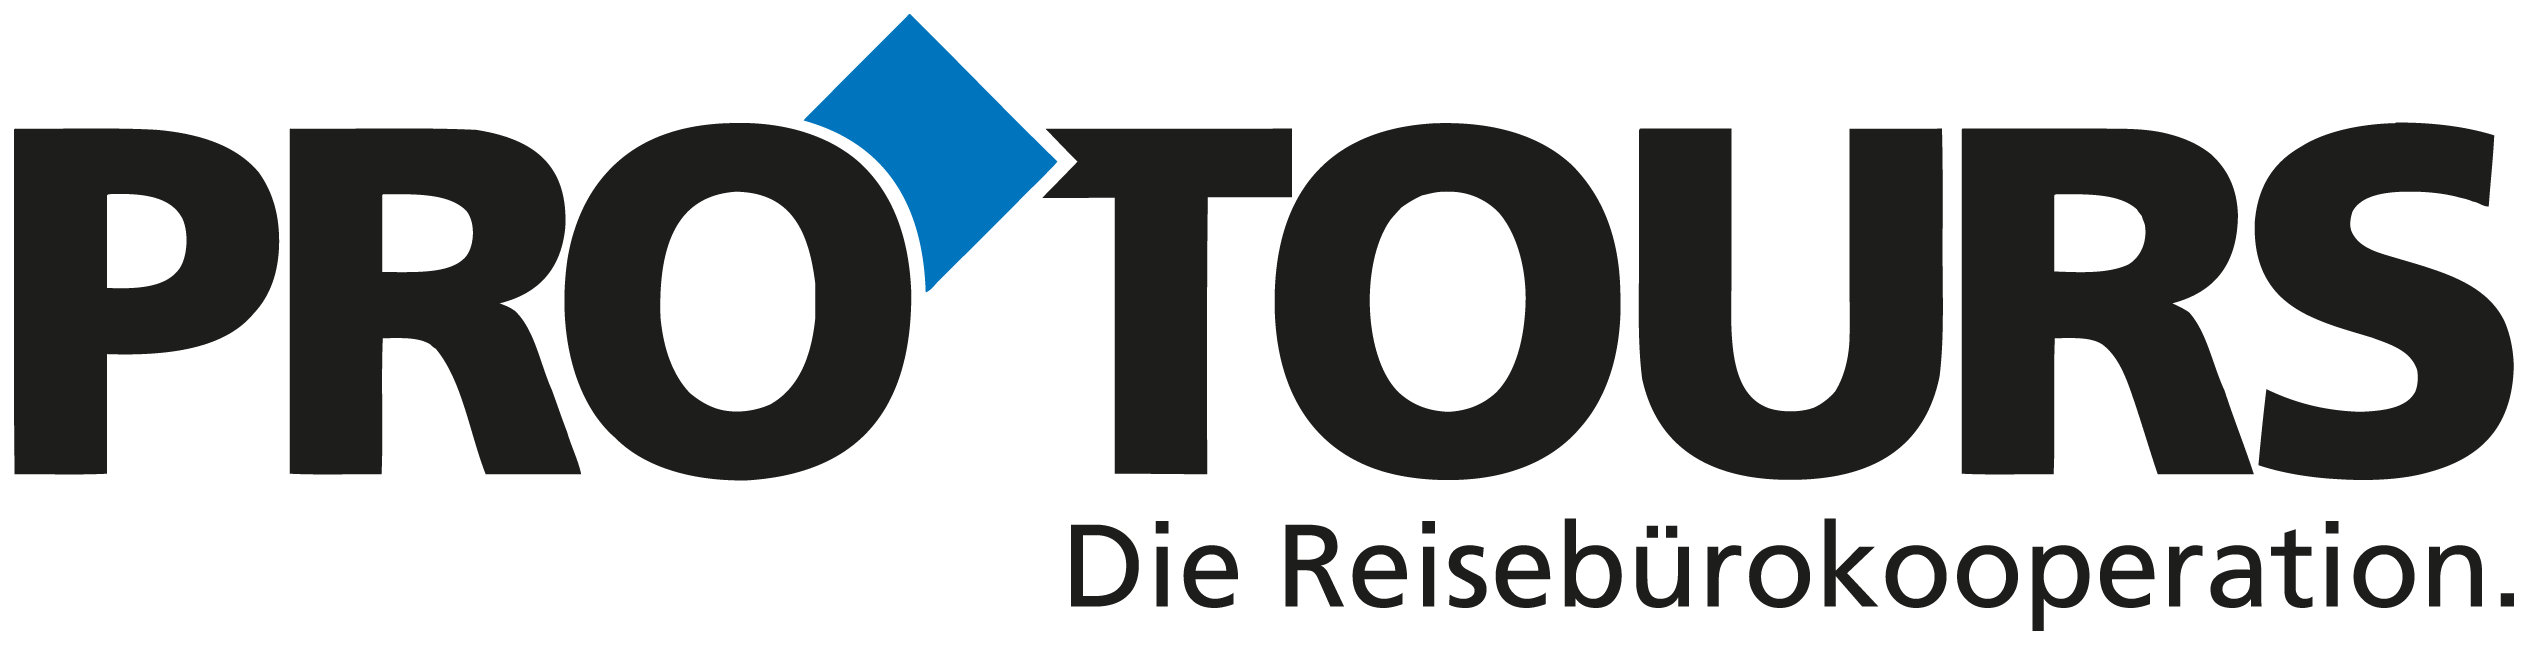 Pro Tours – Die Reisebürokooperation Logo